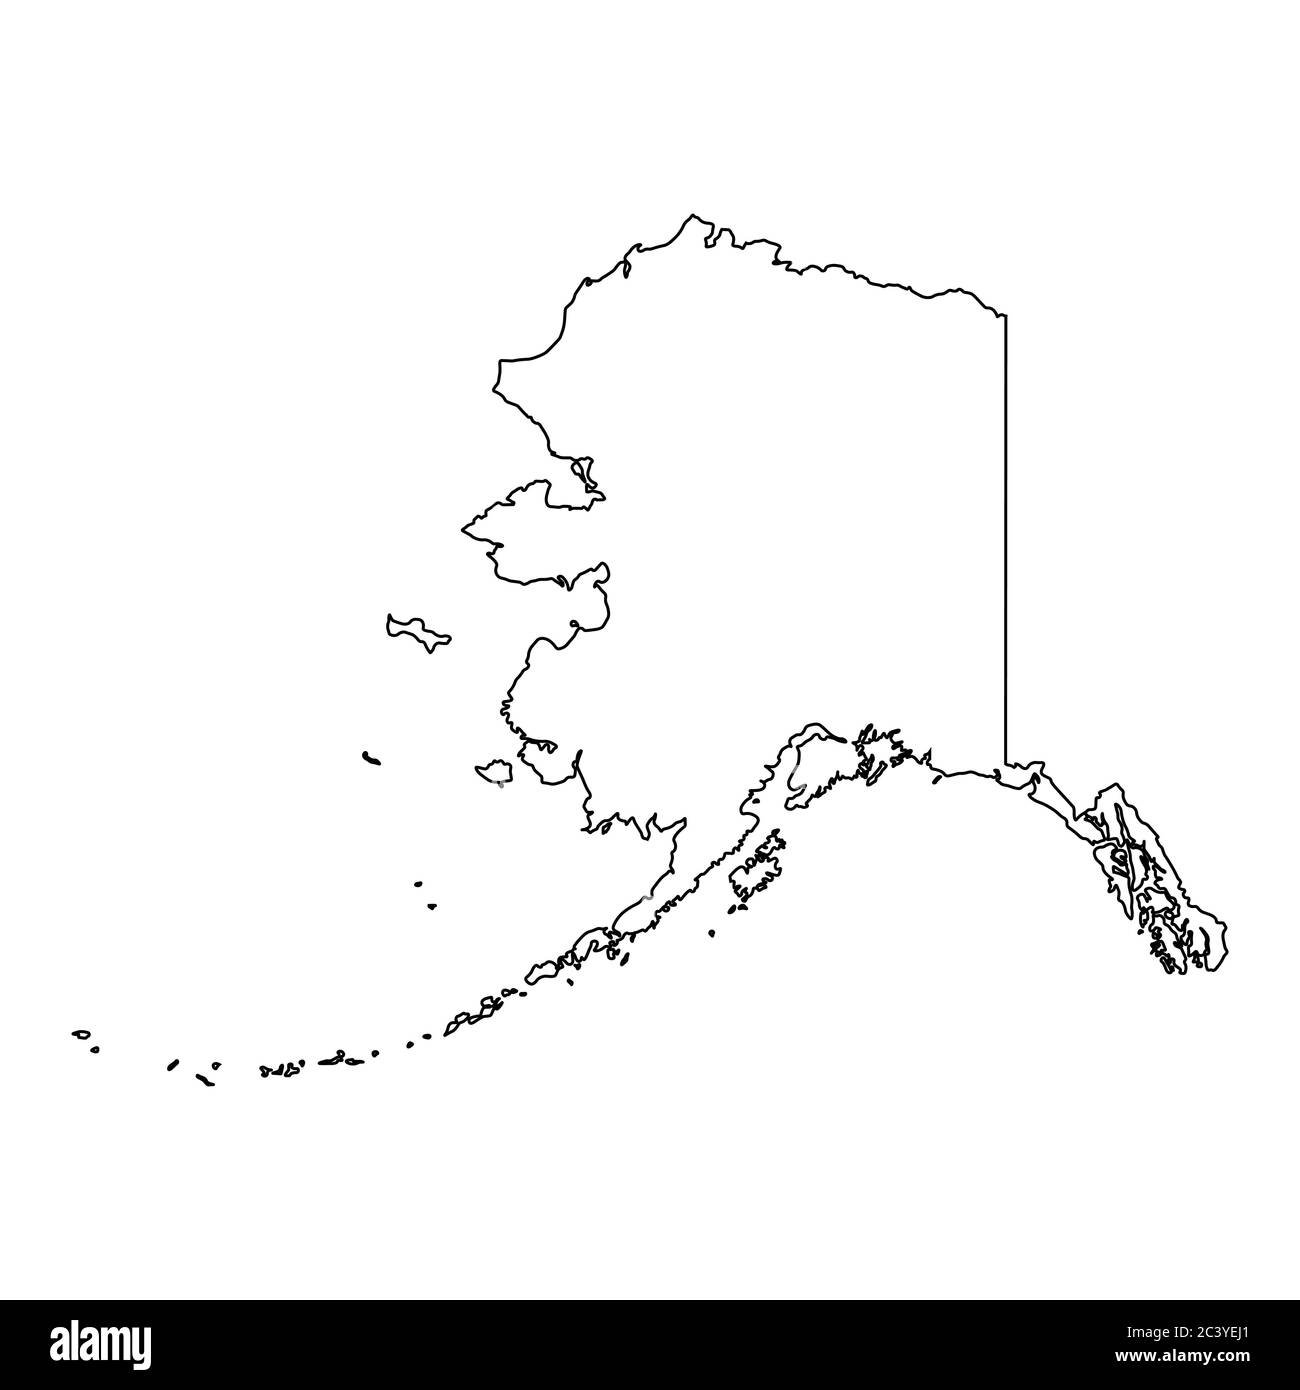 Alaska AK State Map USA. Schwarze Umrisskarte isoliert auf weißem Hintergrund. EPS-Vektor Stock Vektor